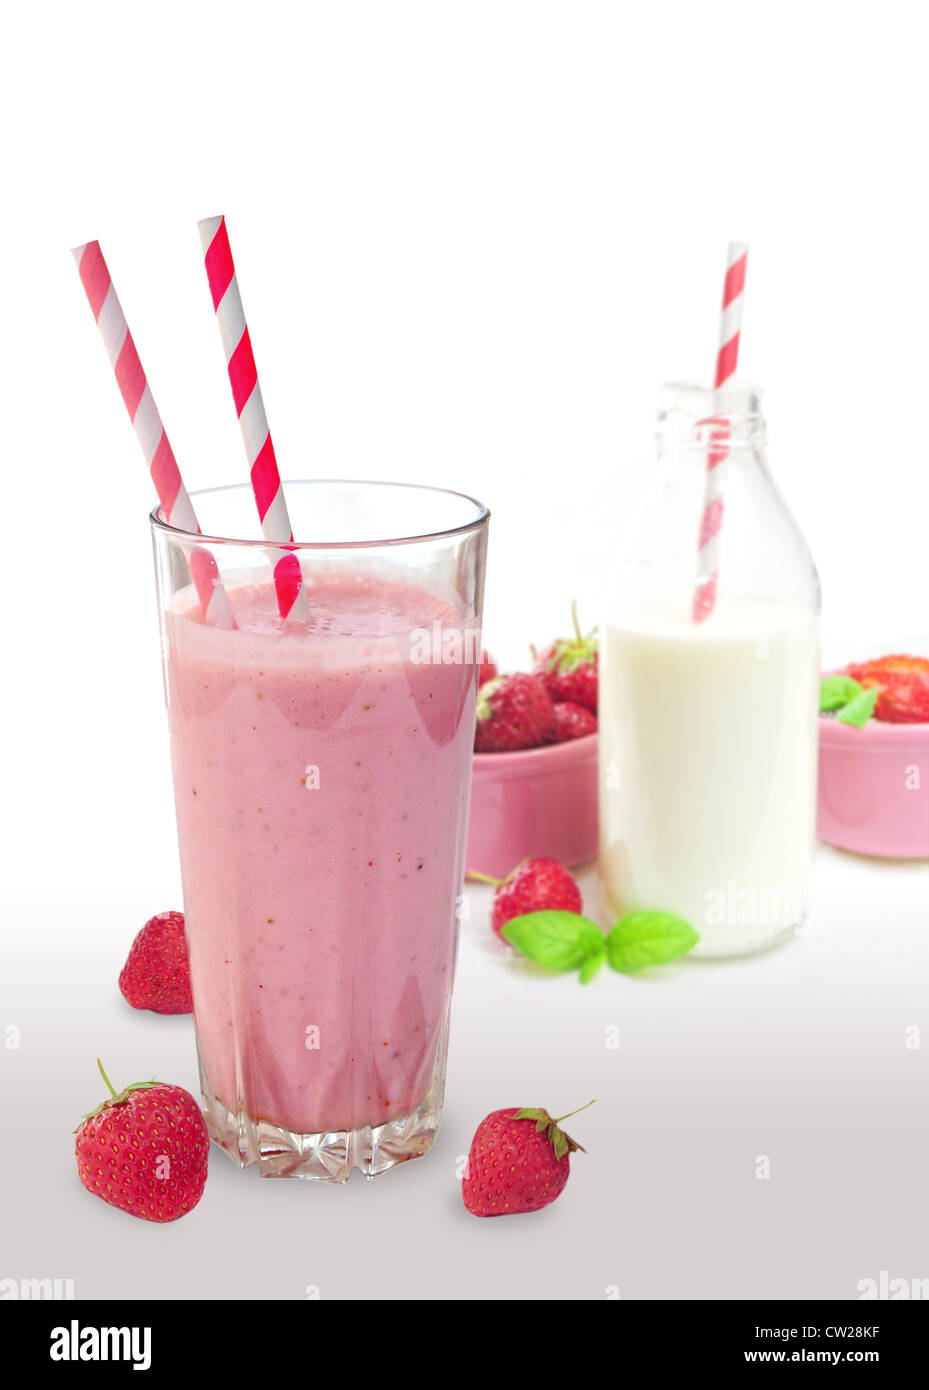 Batido de Fresa en cristal con pajas, botella de leche y frutas en el fondo Foto de stock